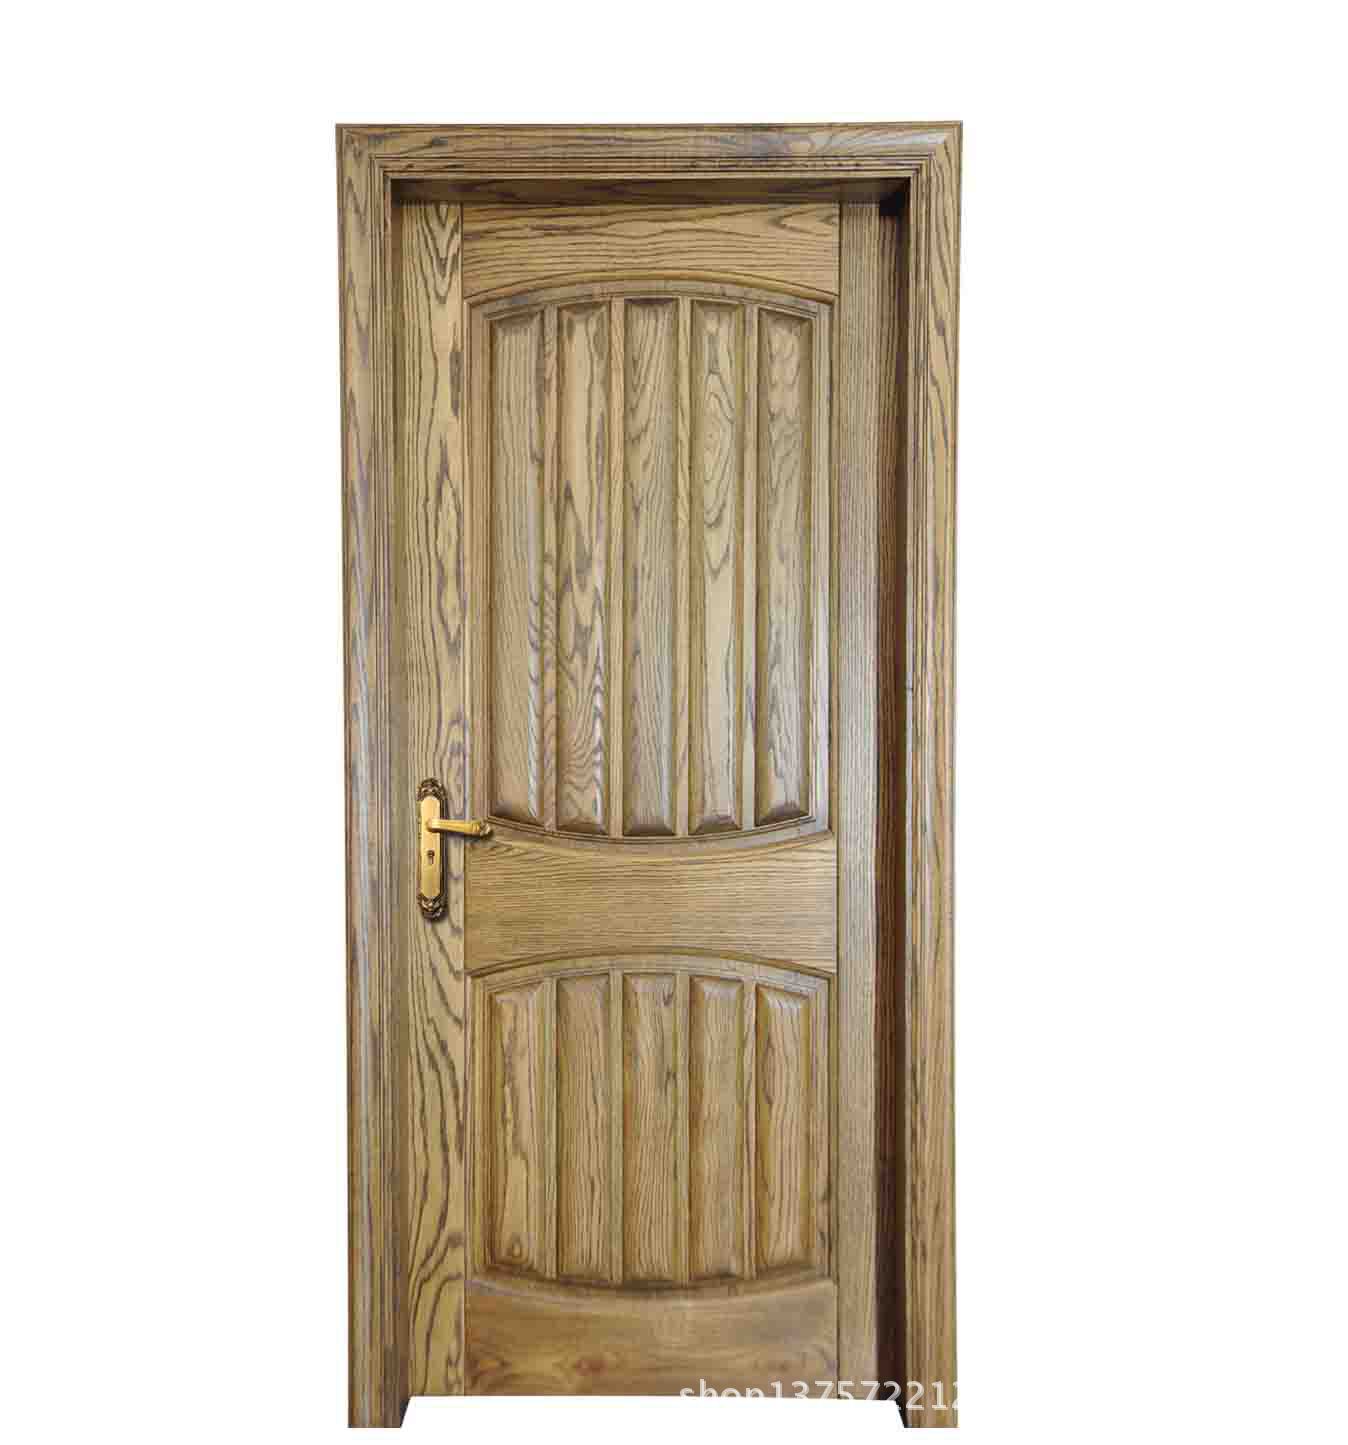 【【批发】优质钢木门|室内套装门 多种颜色款